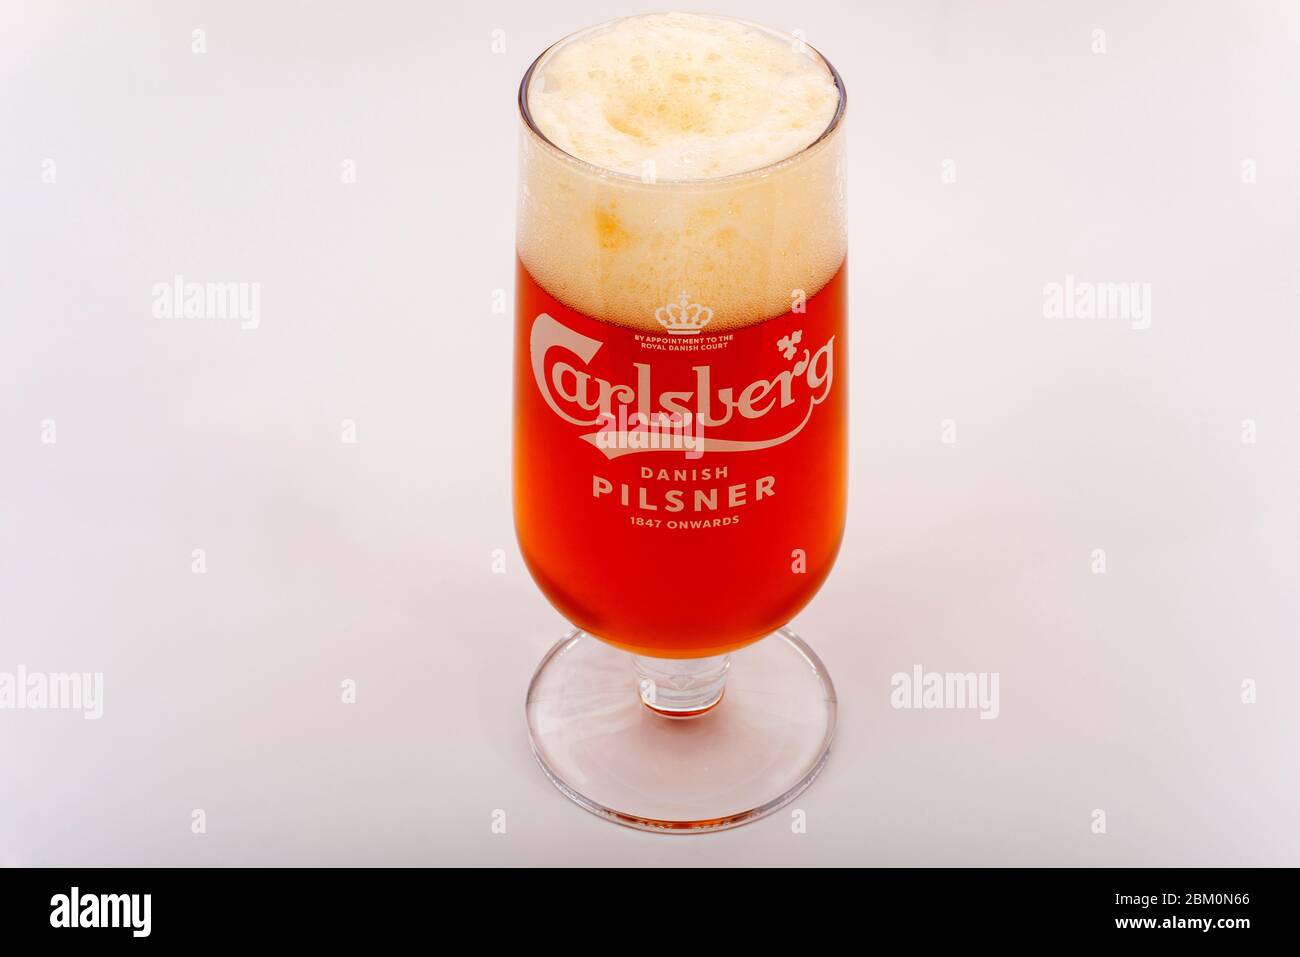 Carlsberg Pilsner beer Stock Photo